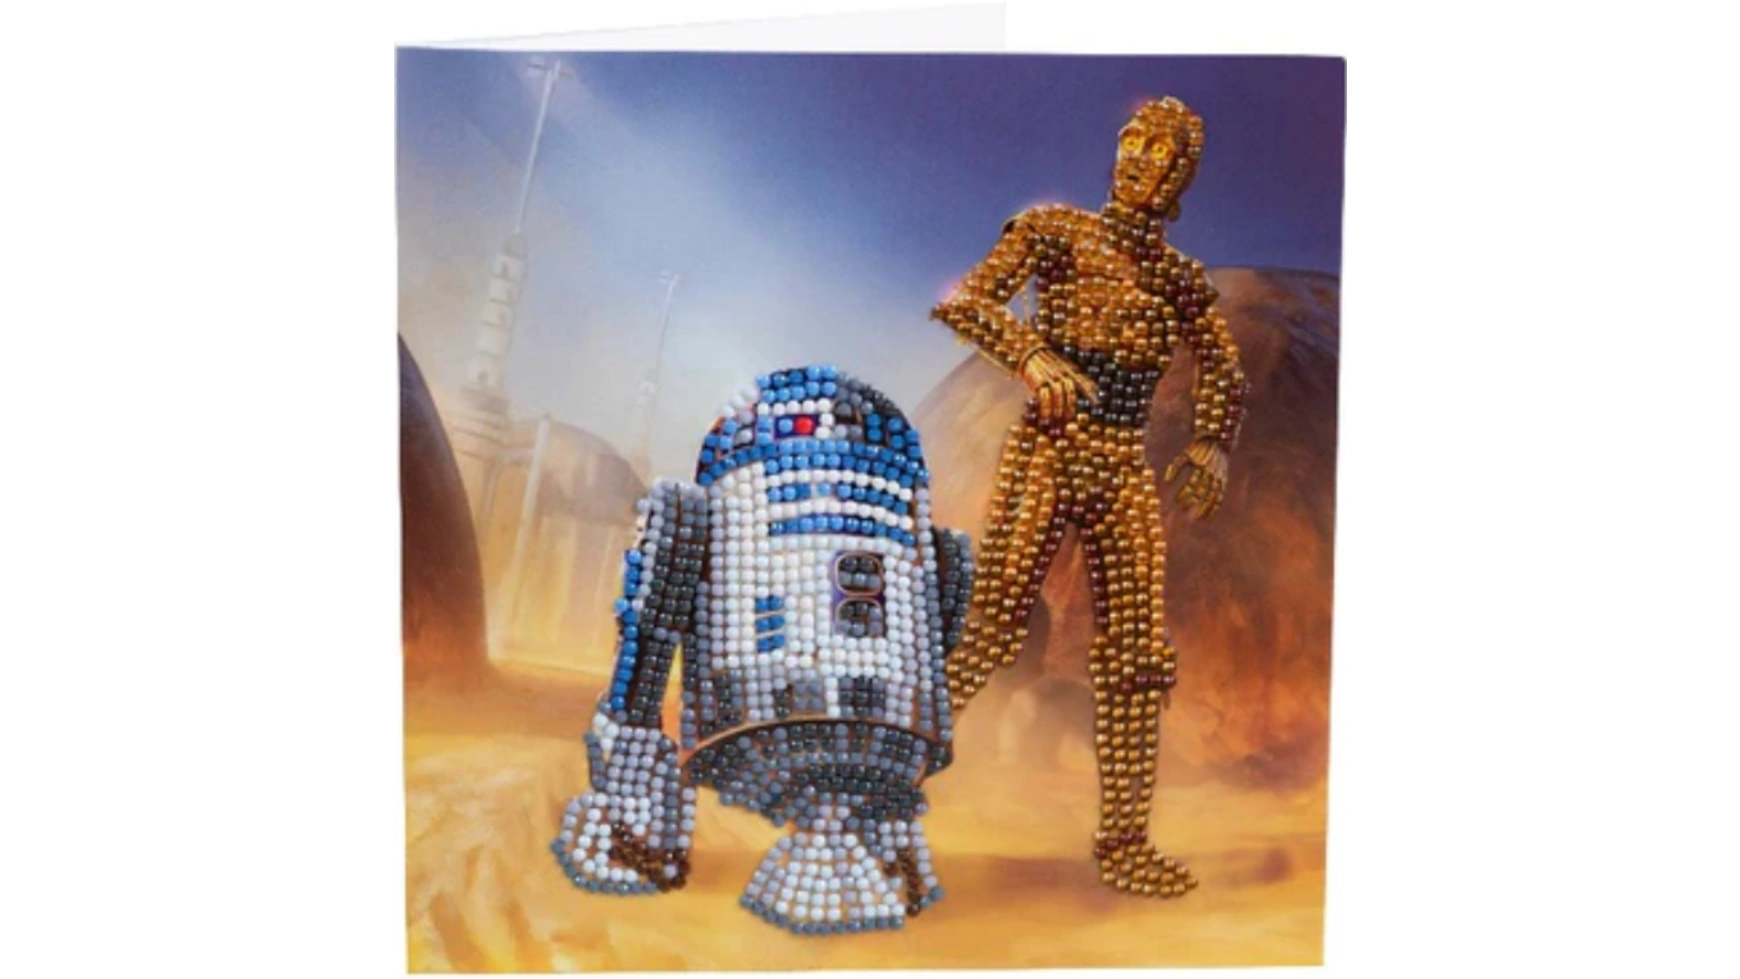 Craft Buddy Crystal Art Алмазная картина R2-D2 и C-3PO 18x18см Кристаллическая художественная открытка бугаенко е наш код ремесло профессия искусство